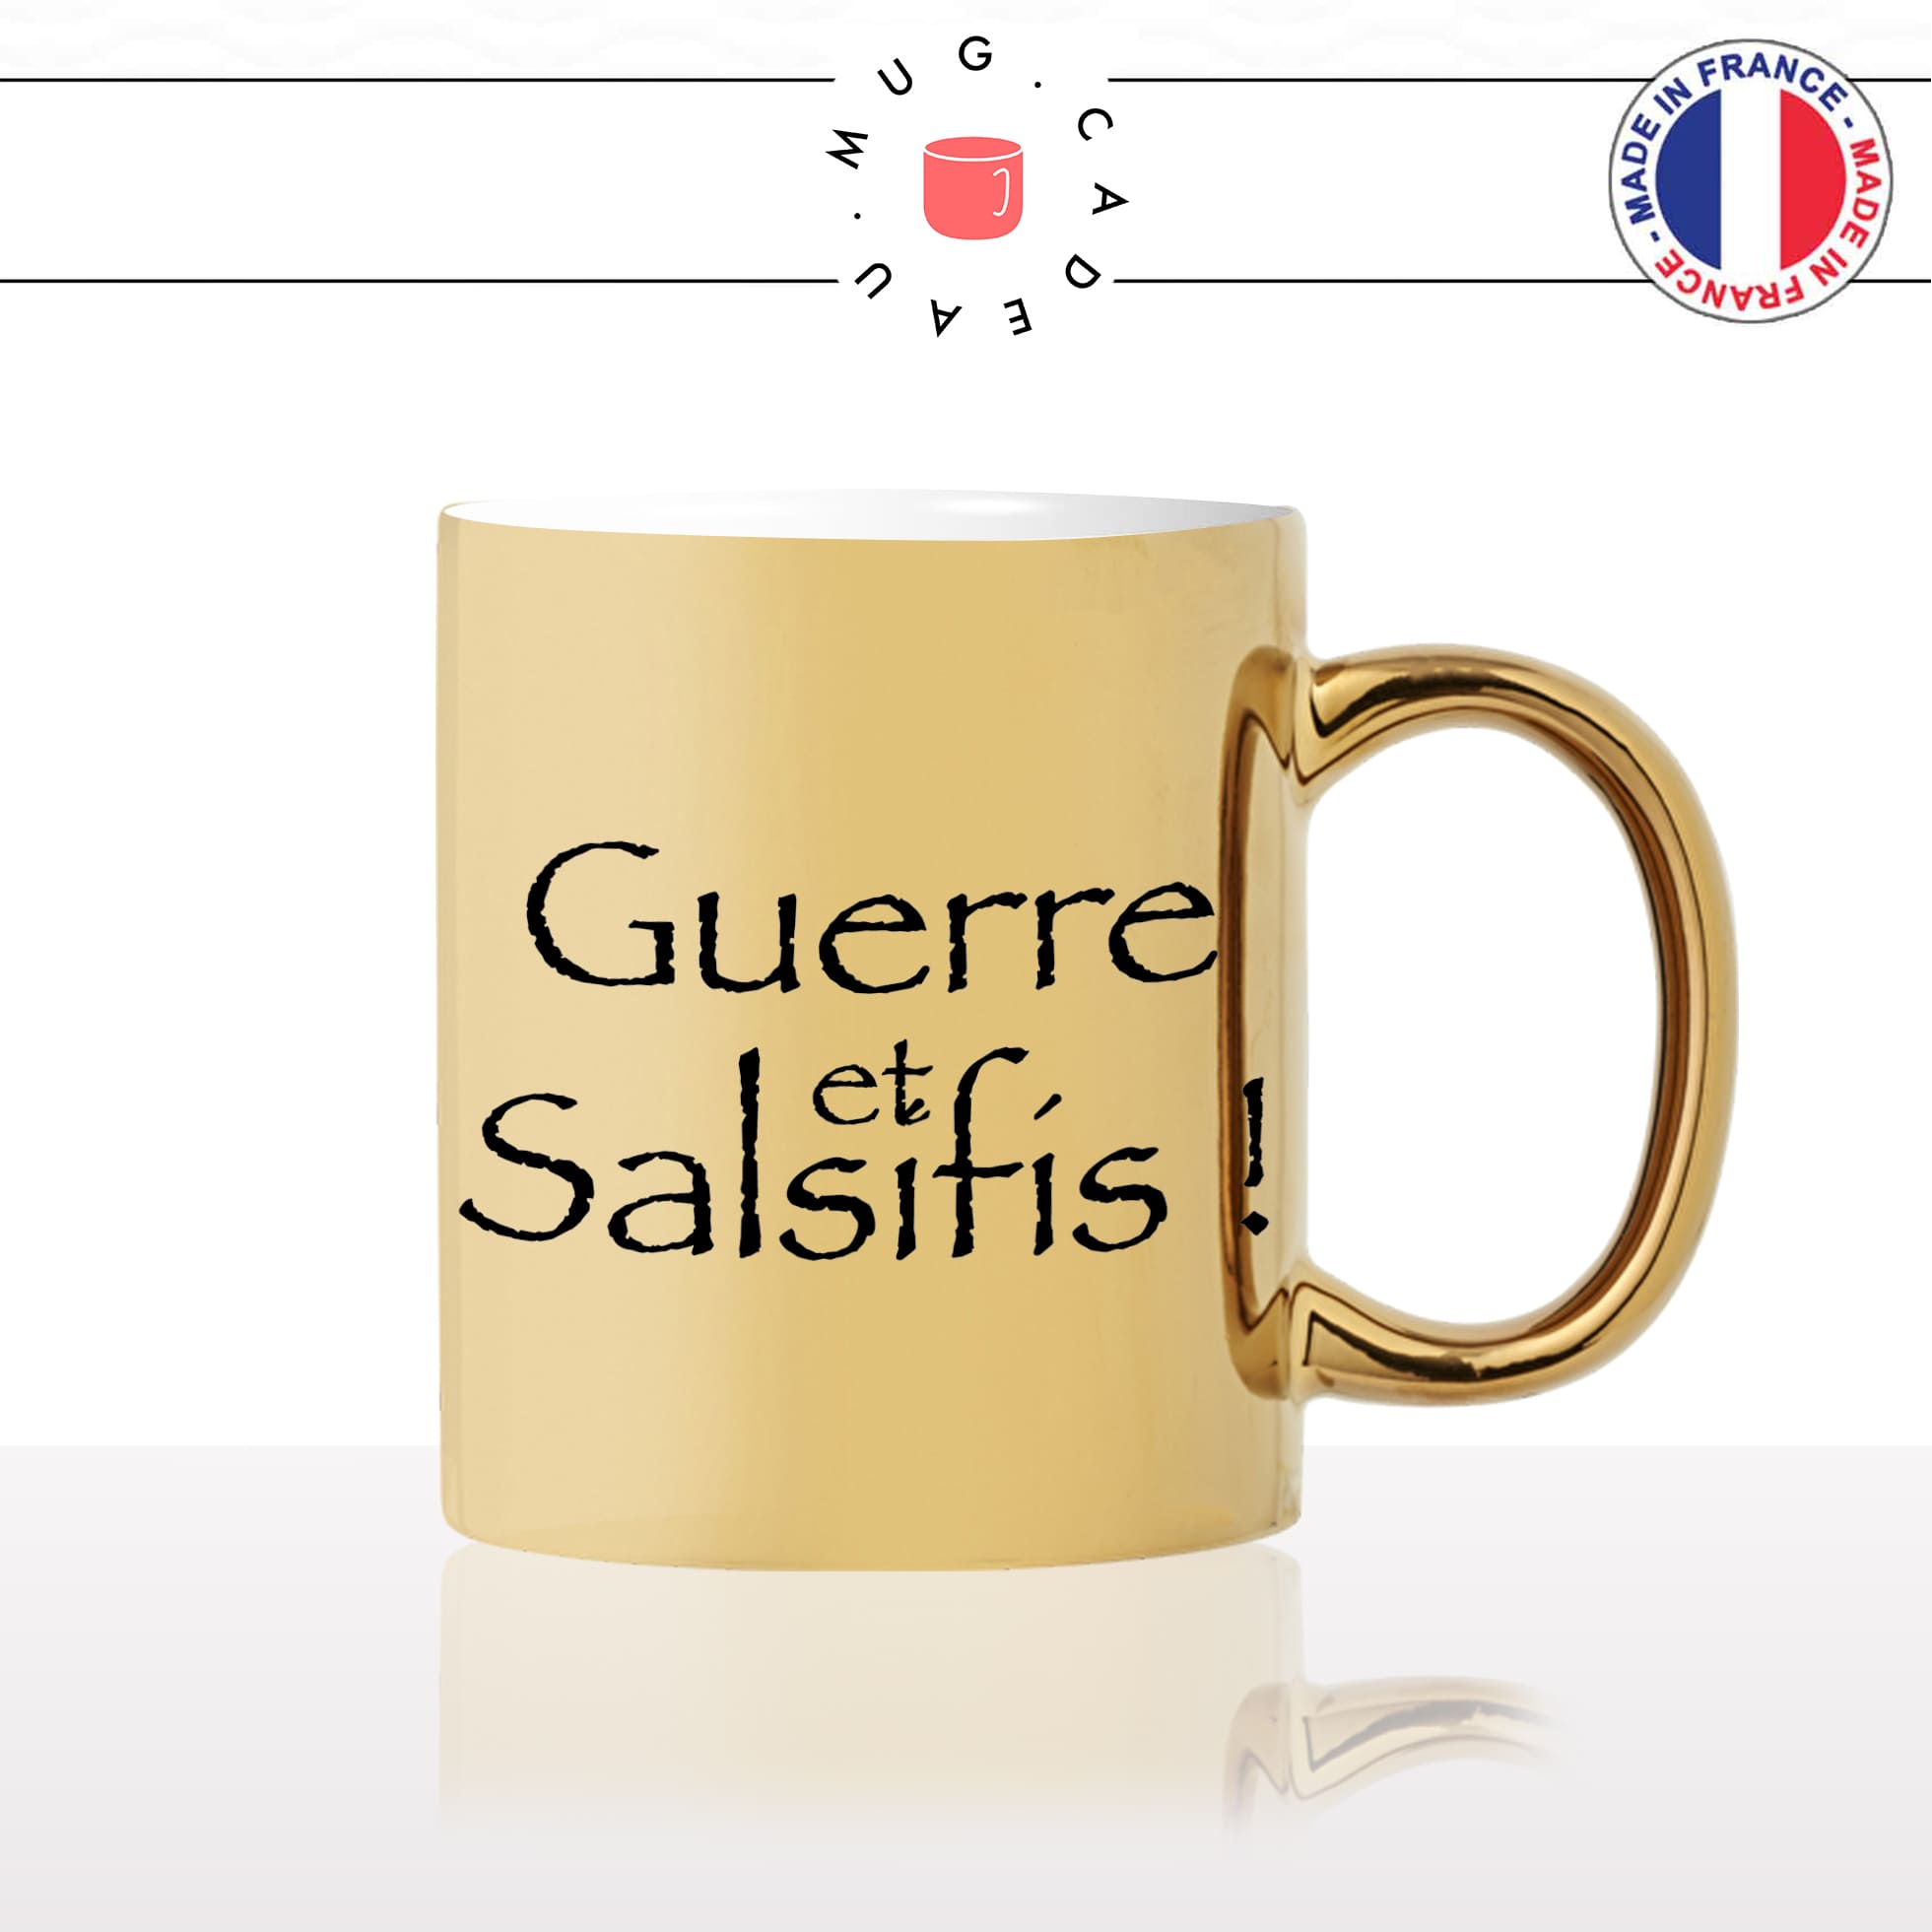 mug-tasse-doré-or-gold-kaamelott-arthur-guerre-et-salsifis-roi-burgonde-citation-culte-série-humour-fun-idée-cadeau-personnalisé-café-thé2